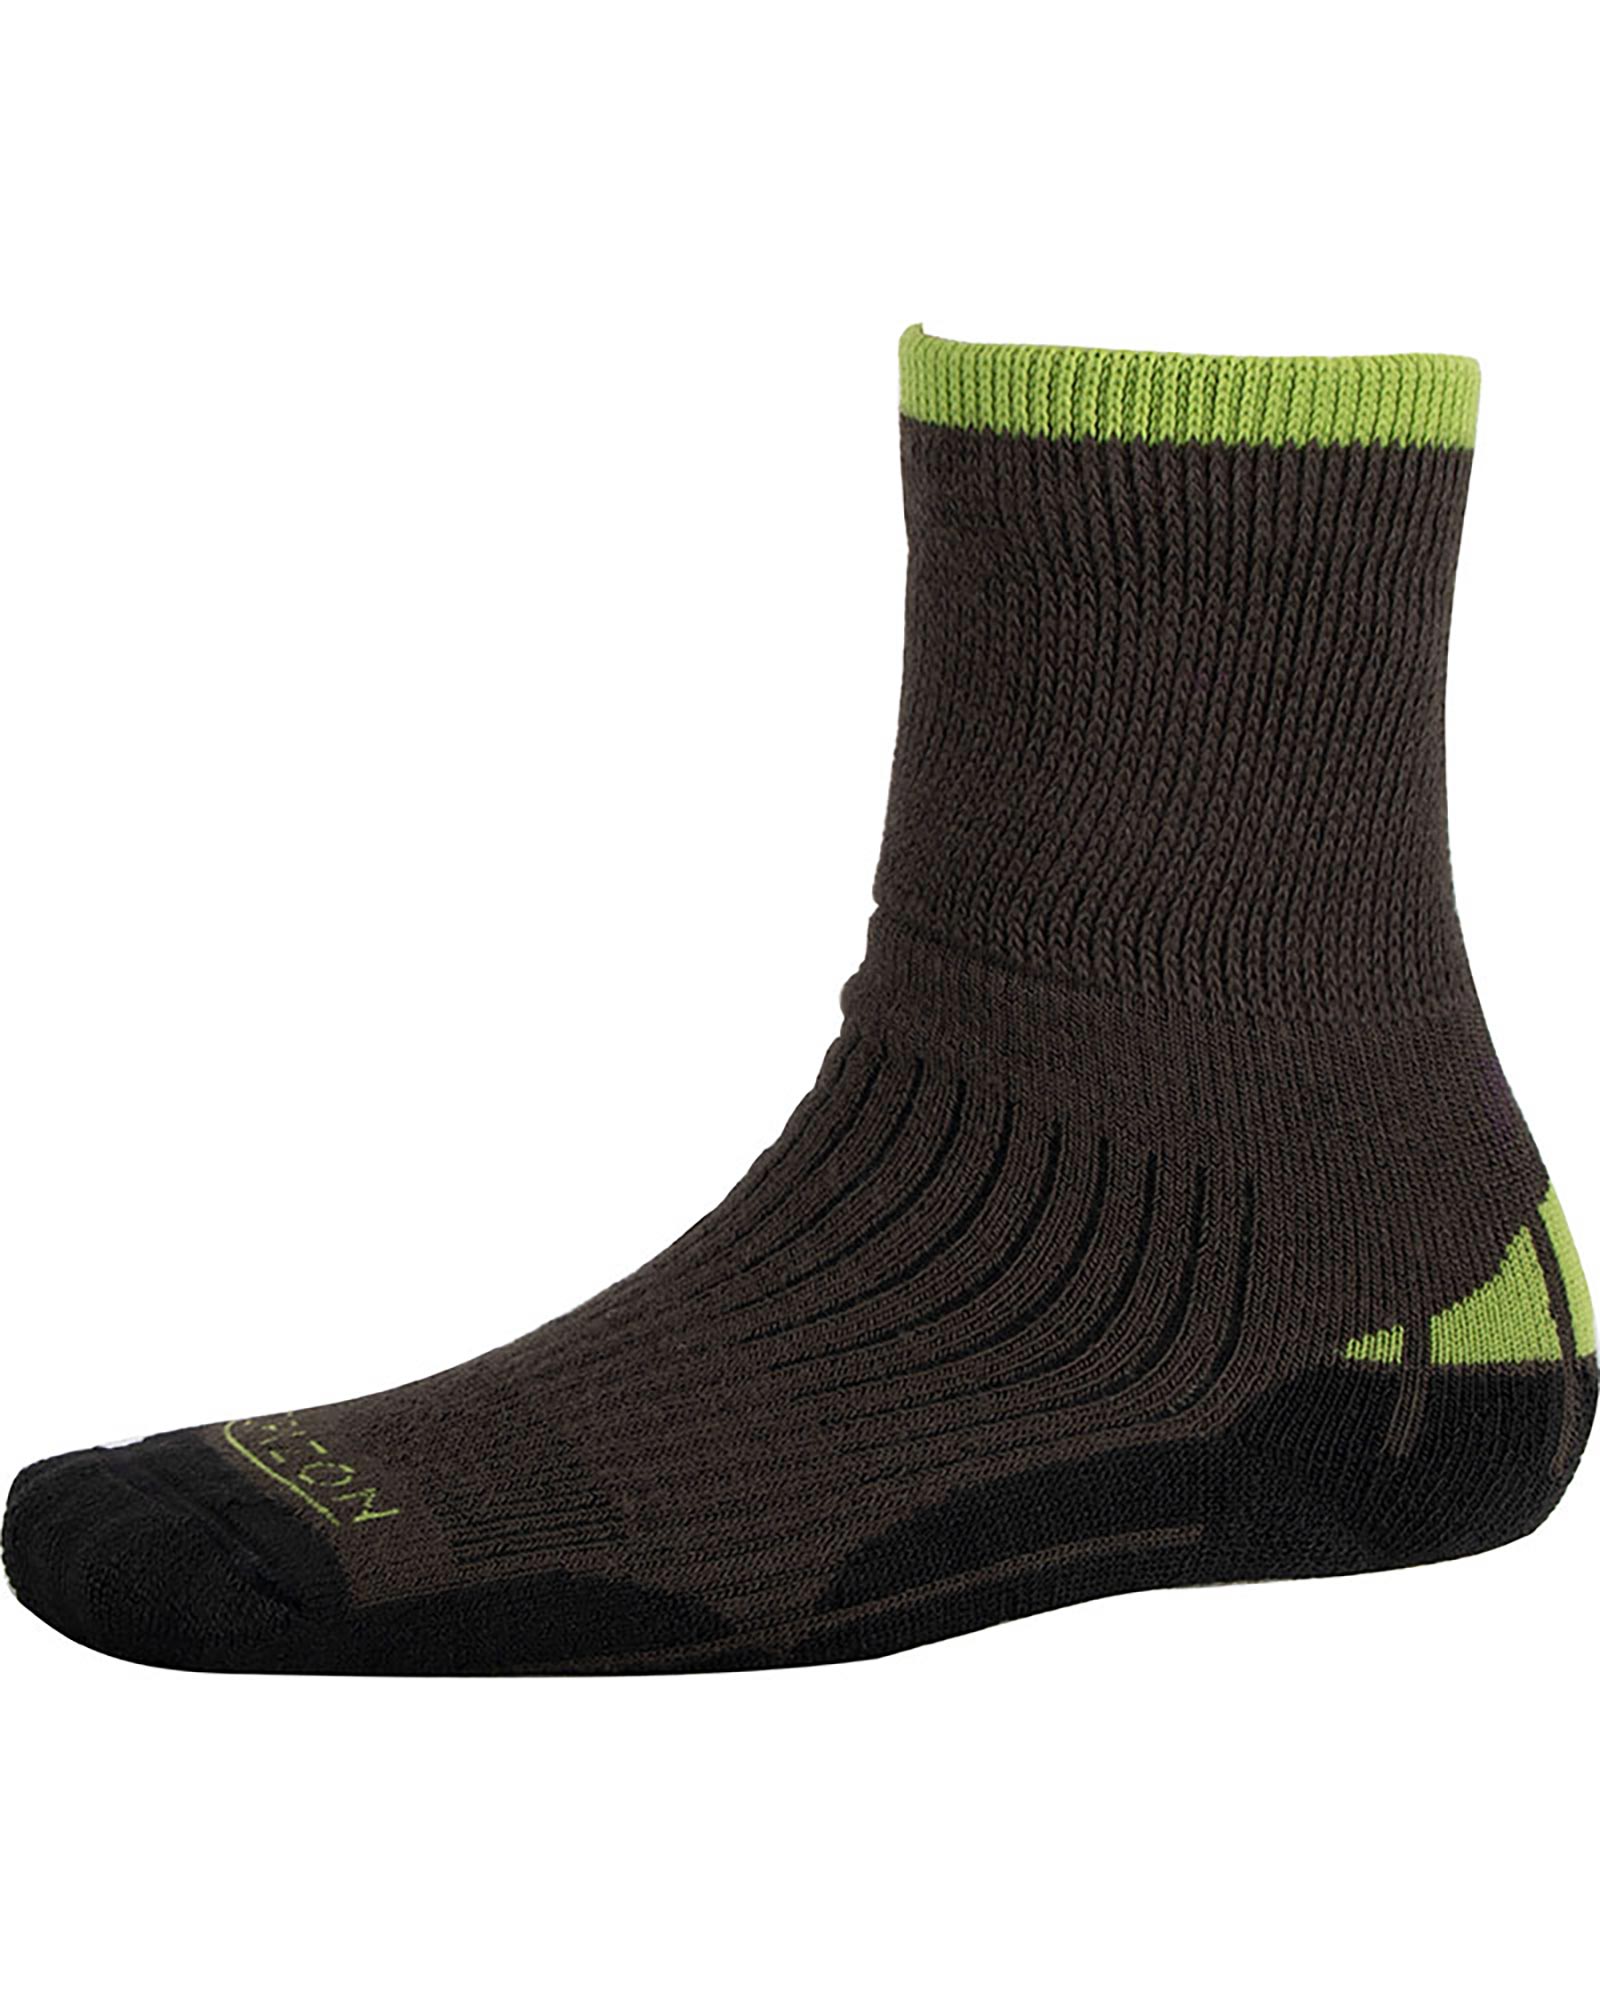 Ellis Brigham Hiker Coolmax Kids’ Socks - Charcoal/Green XS